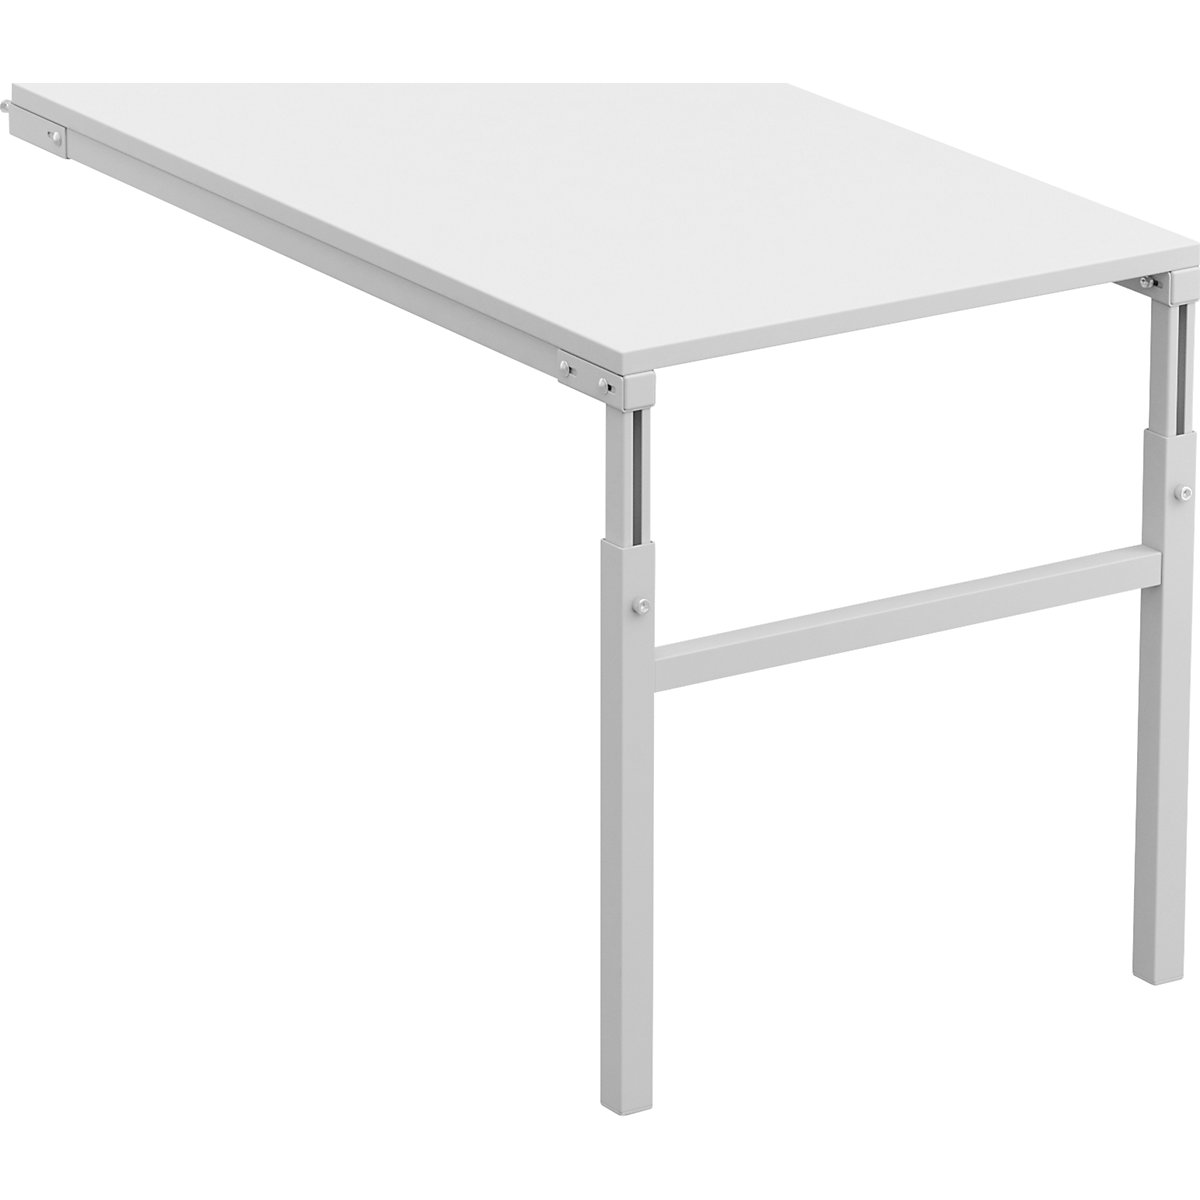 Treston – Pracovní stůl s ručním přestavováním výšky v rozsahu 650 až 900 mm